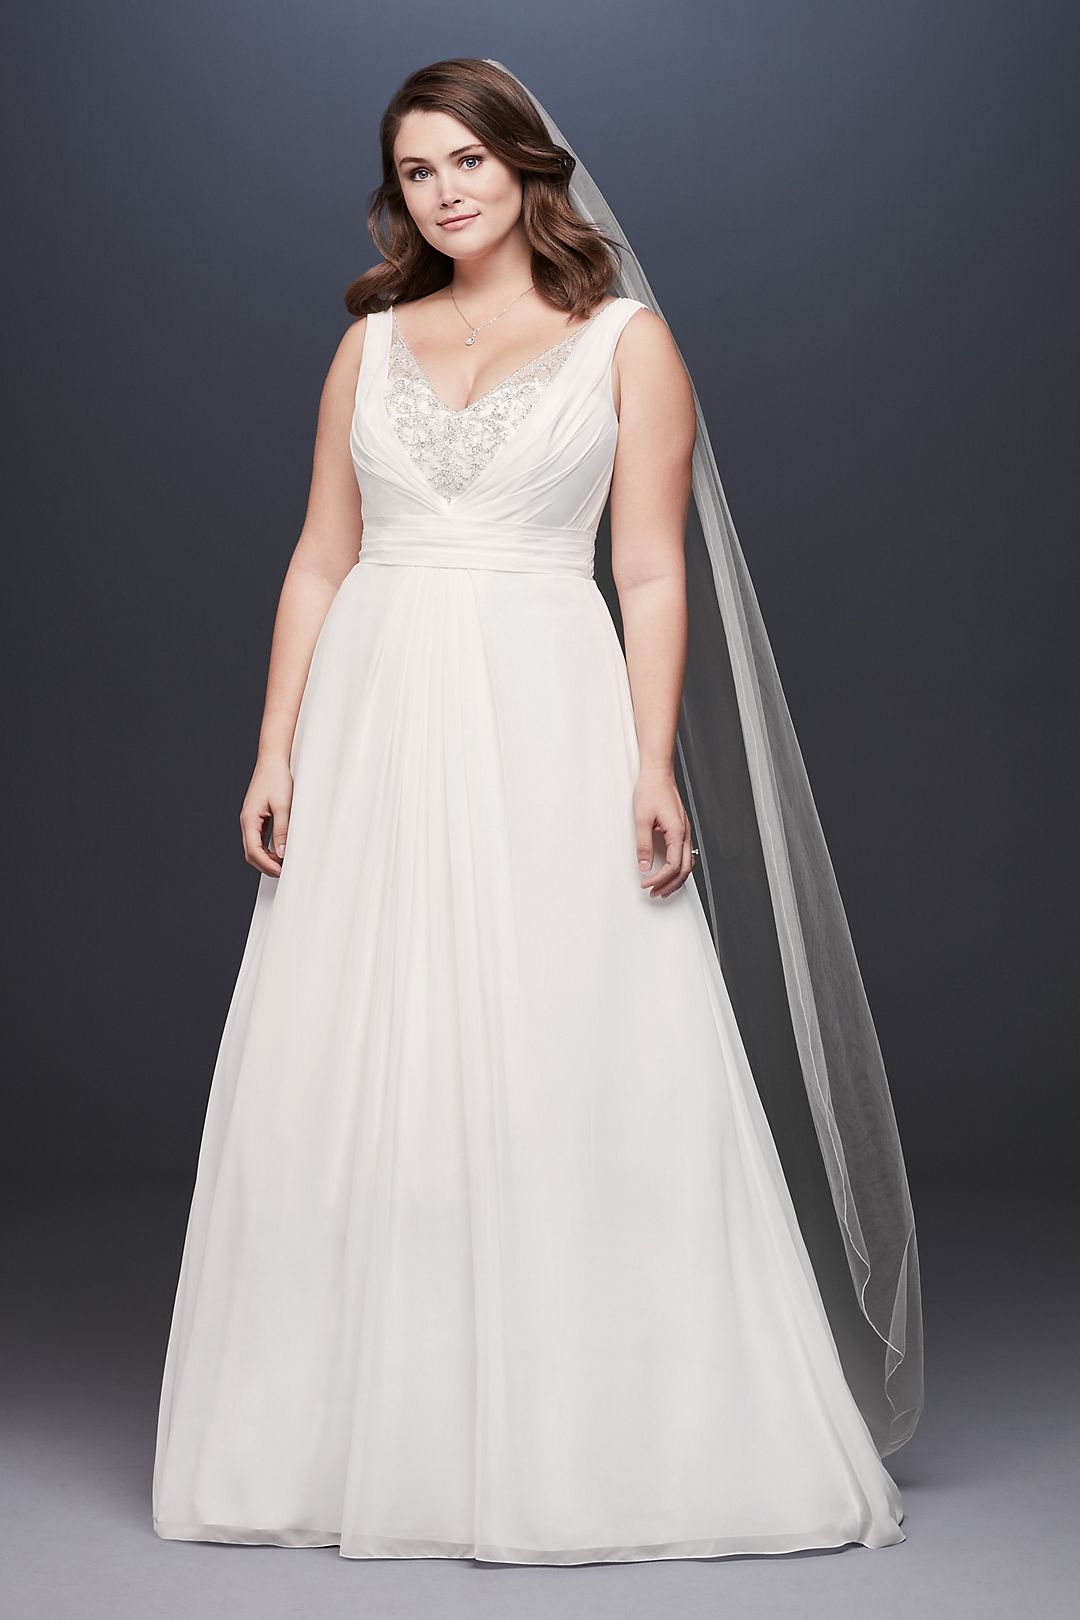 Chiffon V-Neck Tank Wedding Dress with Beading Image 1